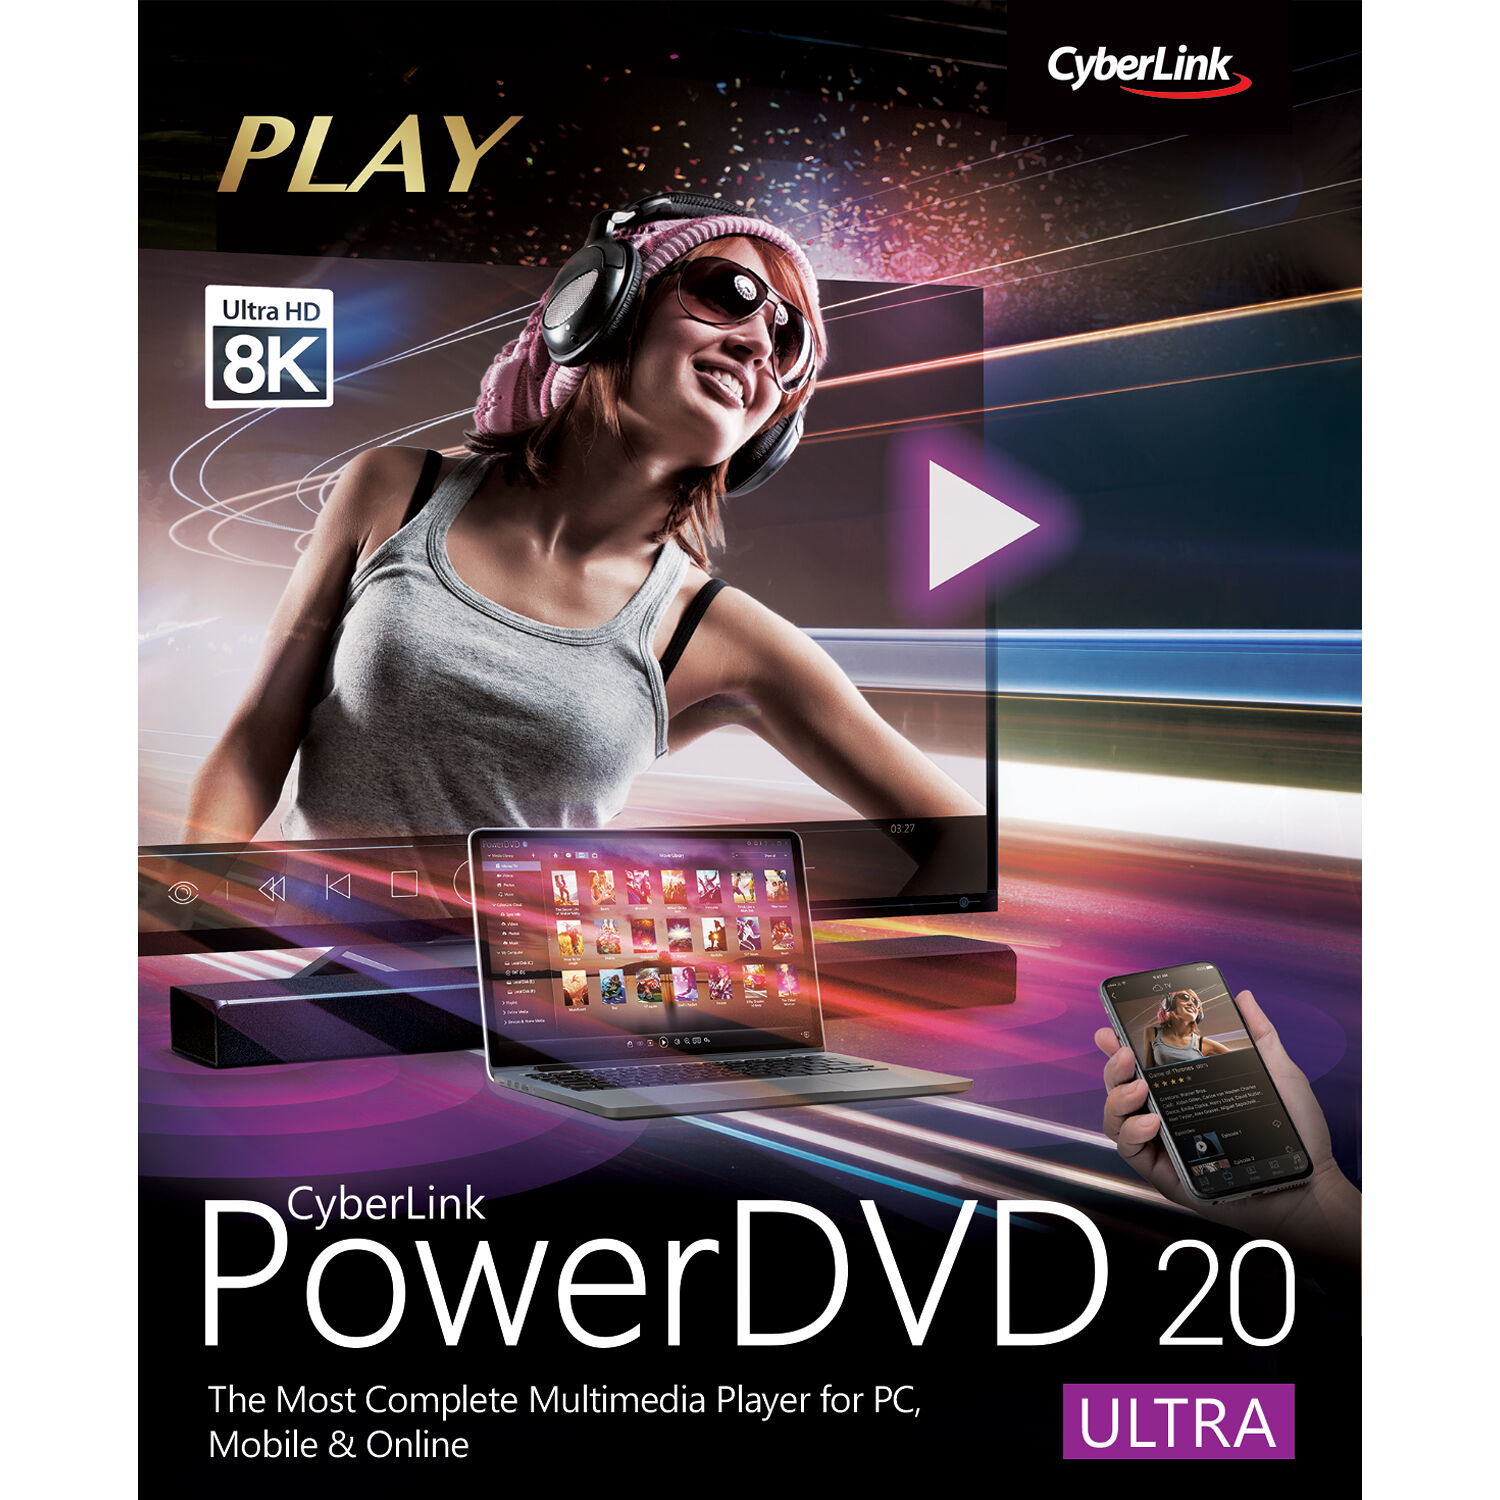 Cyberlink Powerdvd Ultra Boxed Dvd Ek00 Rpu0 00 B H Photo